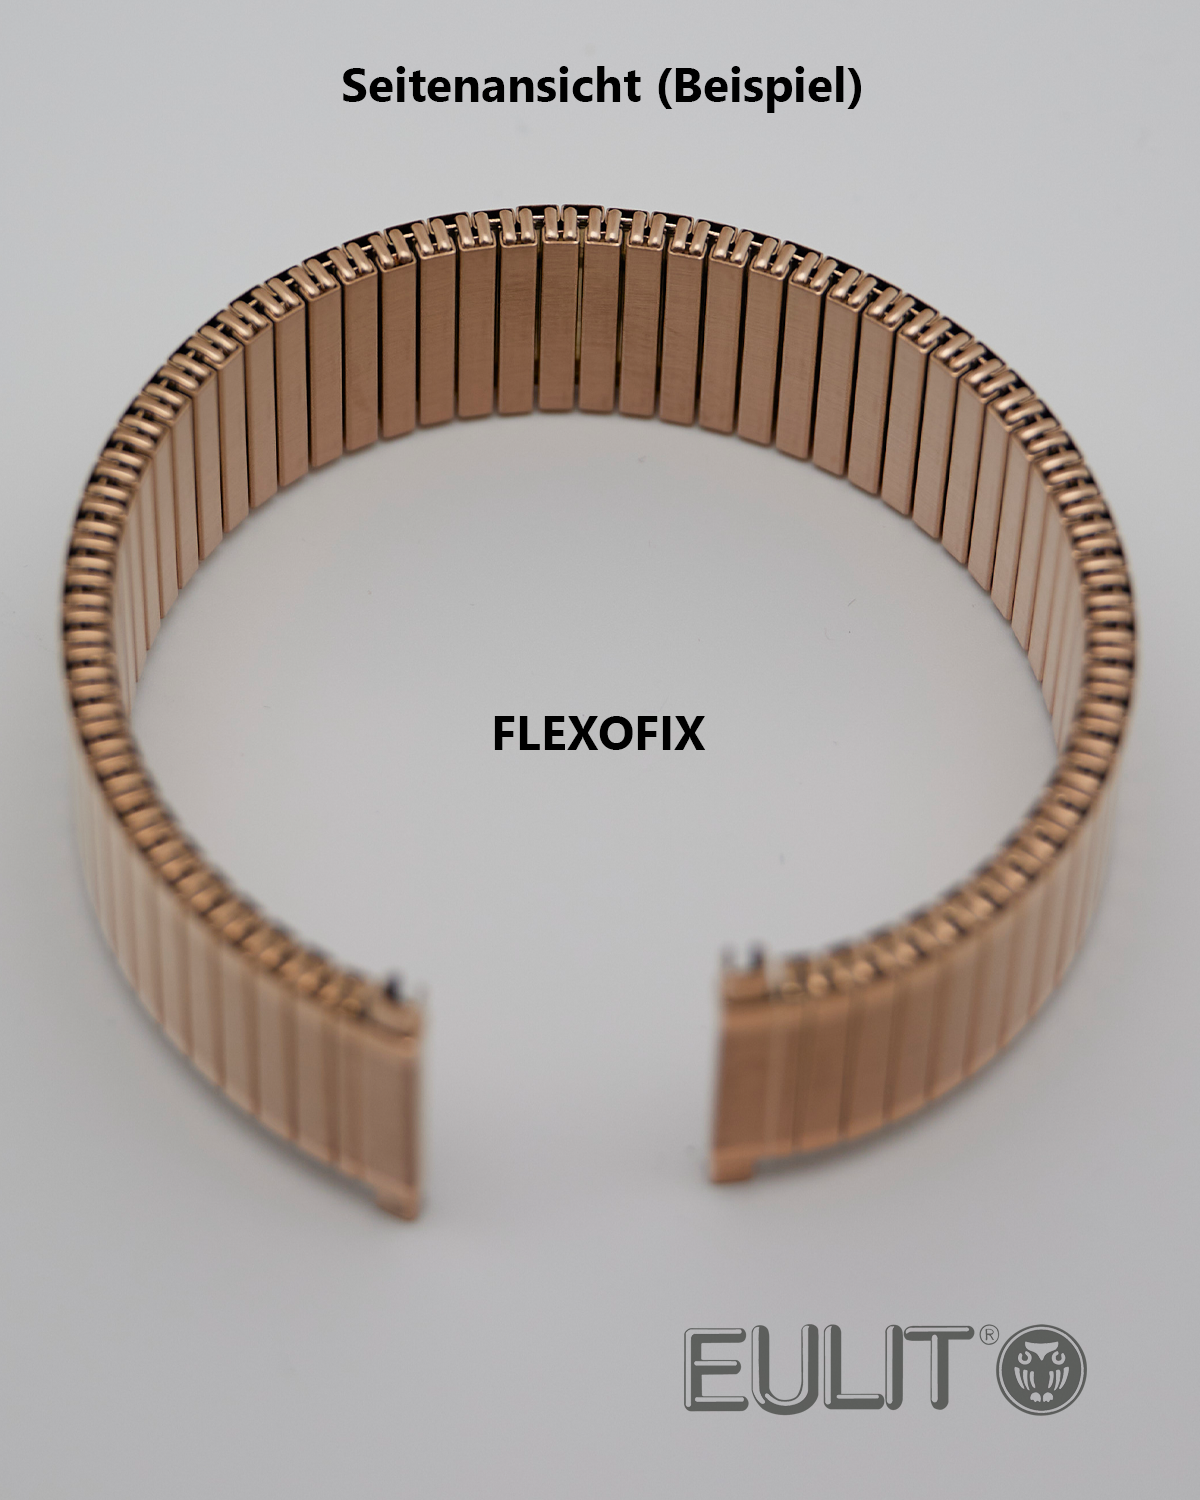 76-425141 EULIT FLEXOFIX 14-16 mm vergoldet